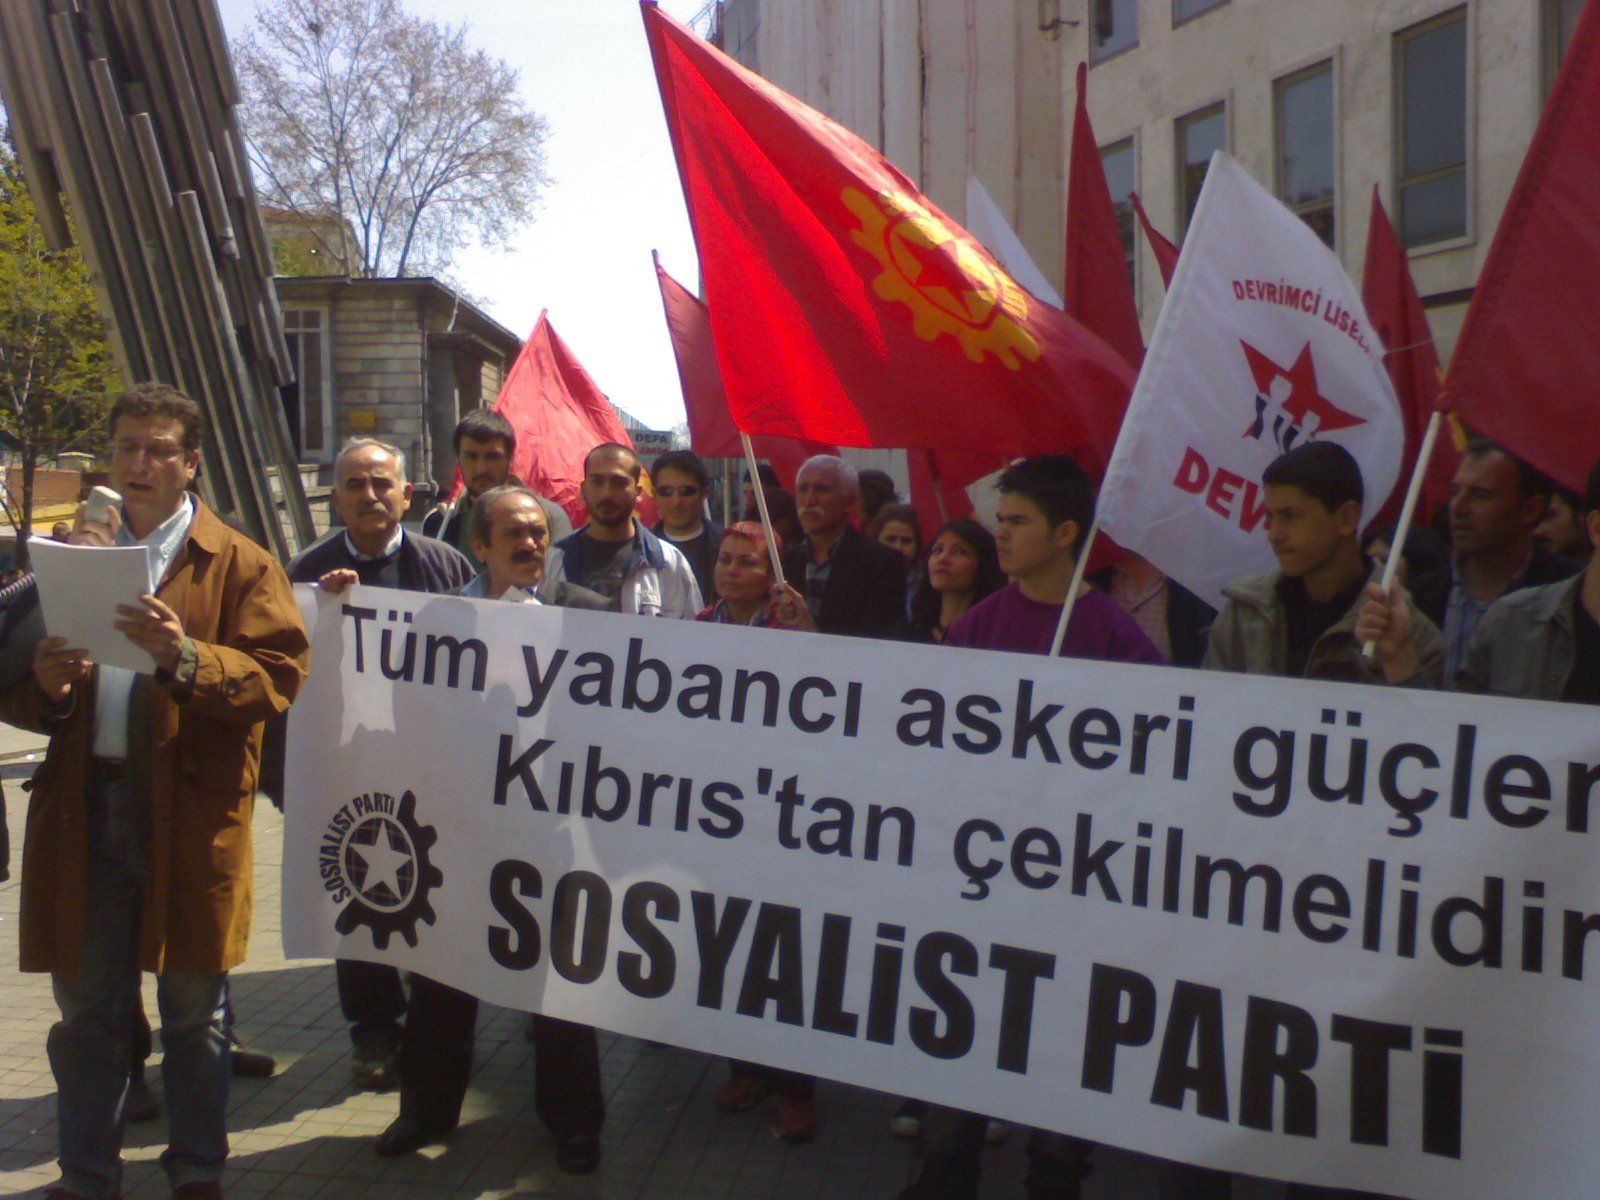 Sosyalist Parti: "Türkiye Kıbrıs'tan Şartsız Çekilsin!" 